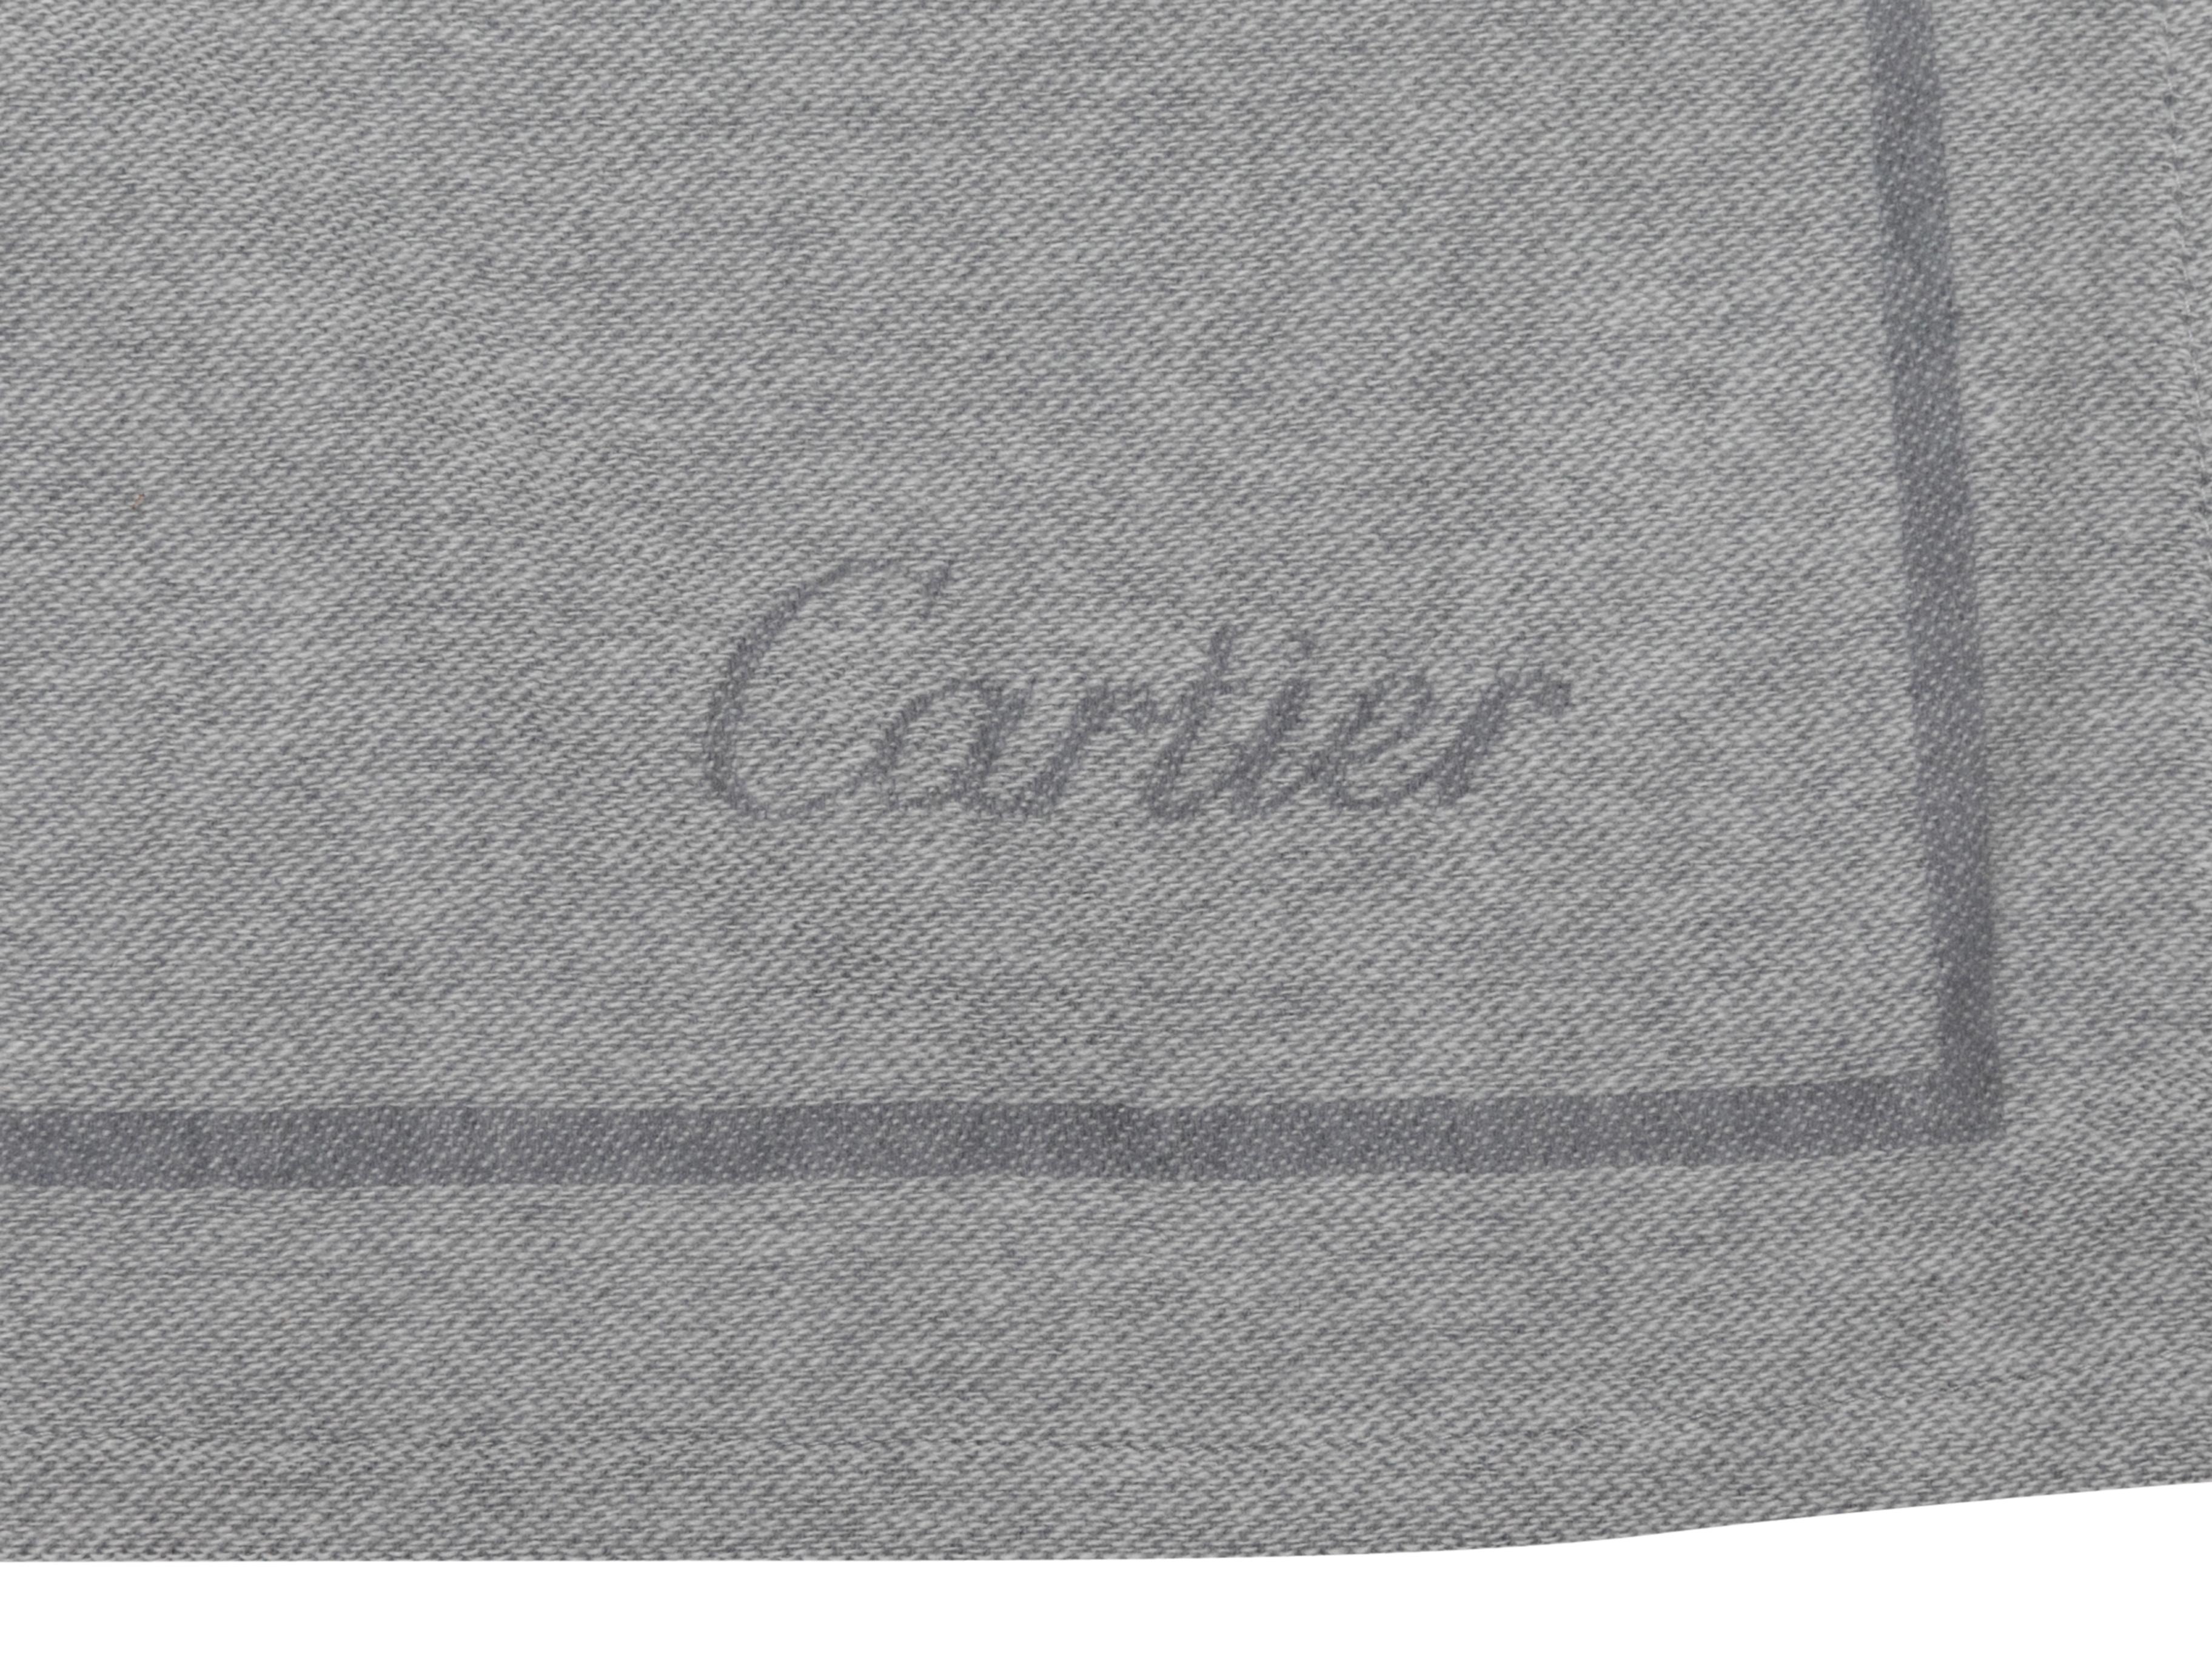 Echarpe en cachemire gris imprimé de rubans par Cartier. Largeur 27